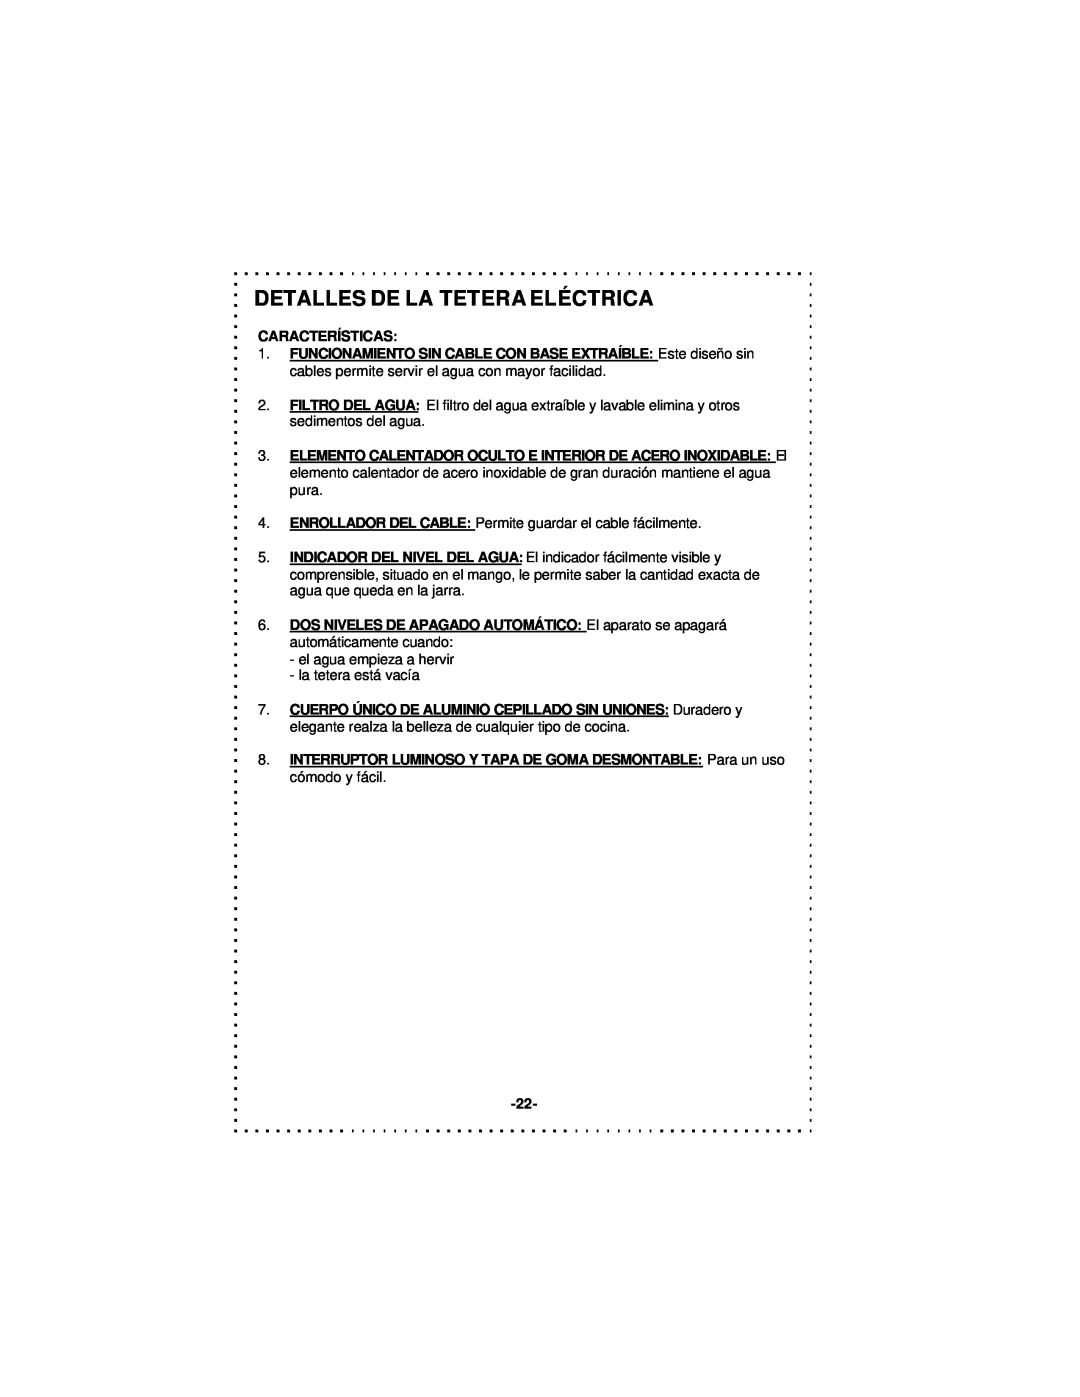 DeLonghi DSJ900 instruction manual Detalles De La Tetera Eléctrica, Características 